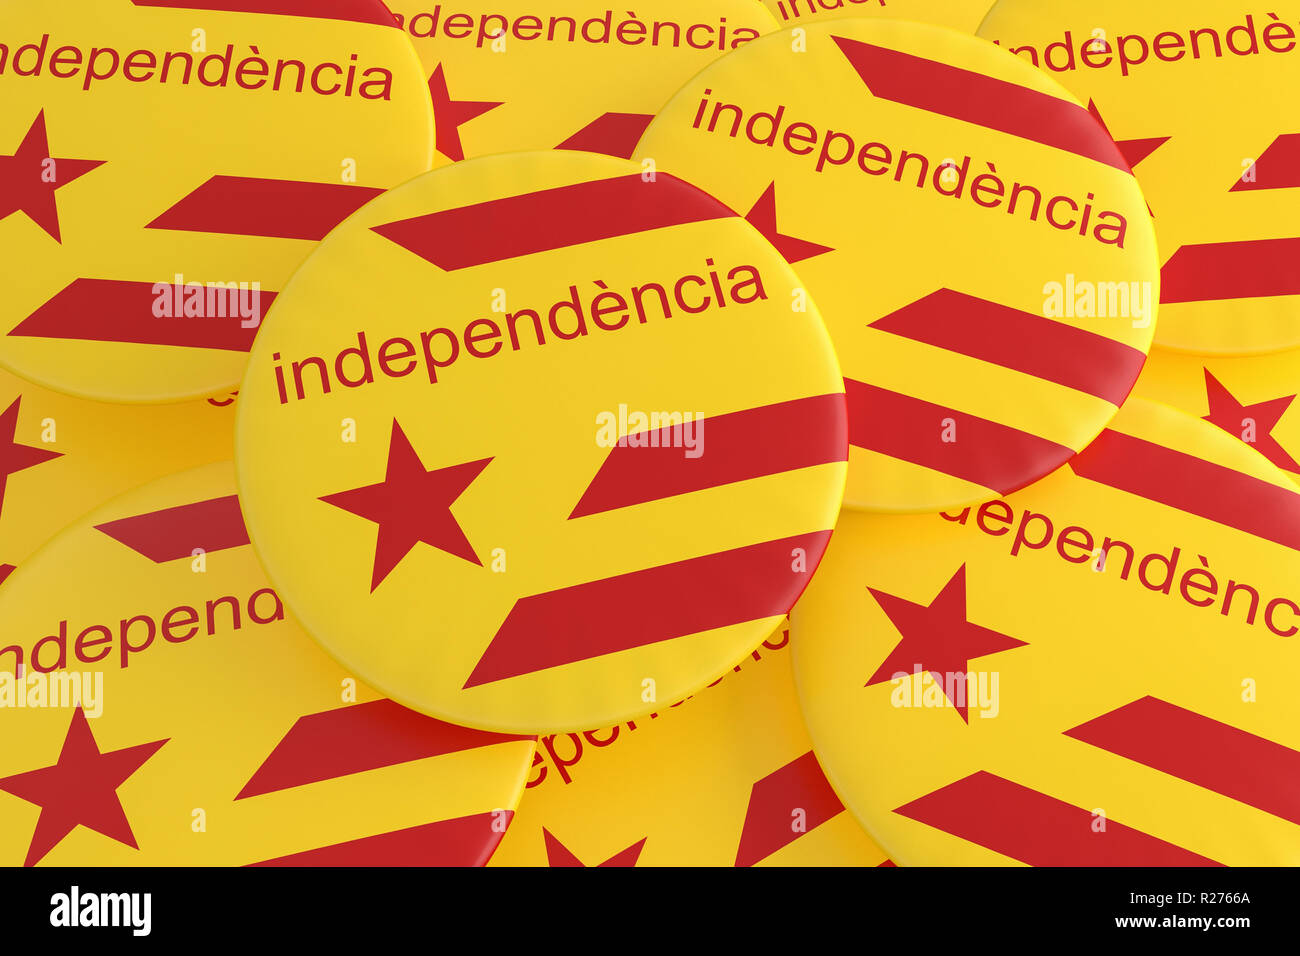 Spagna Catalogna Movimento di Indipendenza del concetto: Bandiera Estelada i badge con parola indipendenza in lingua catalana, 3d illustrazione Foto Stock